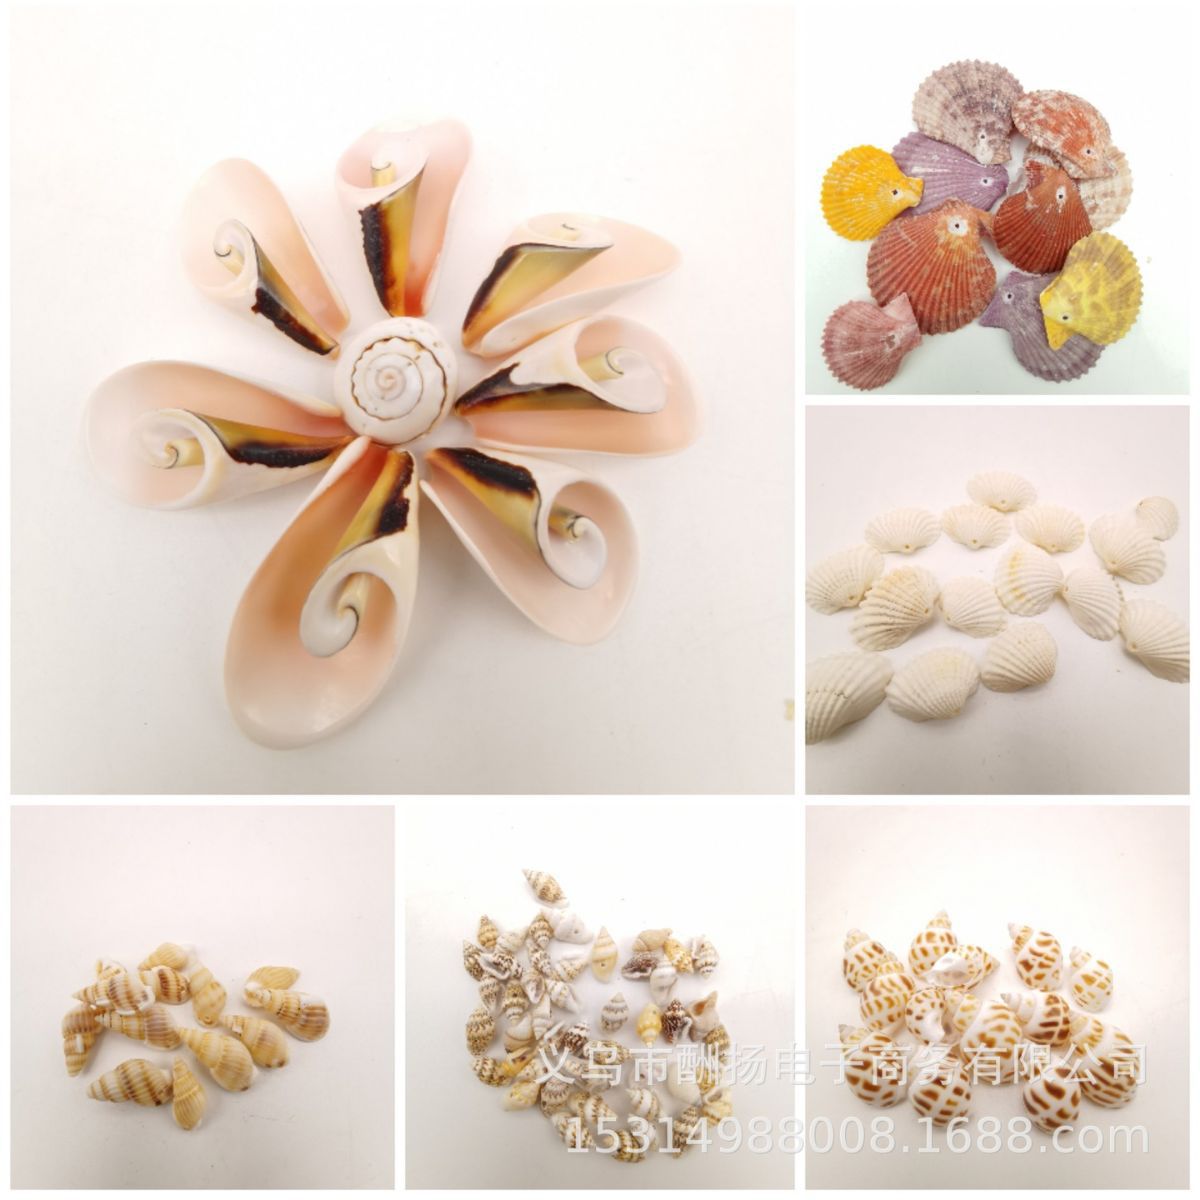 40个种类打孔天然贝壳海螺海星厂家 幼儿园手工diy挂饰品配件